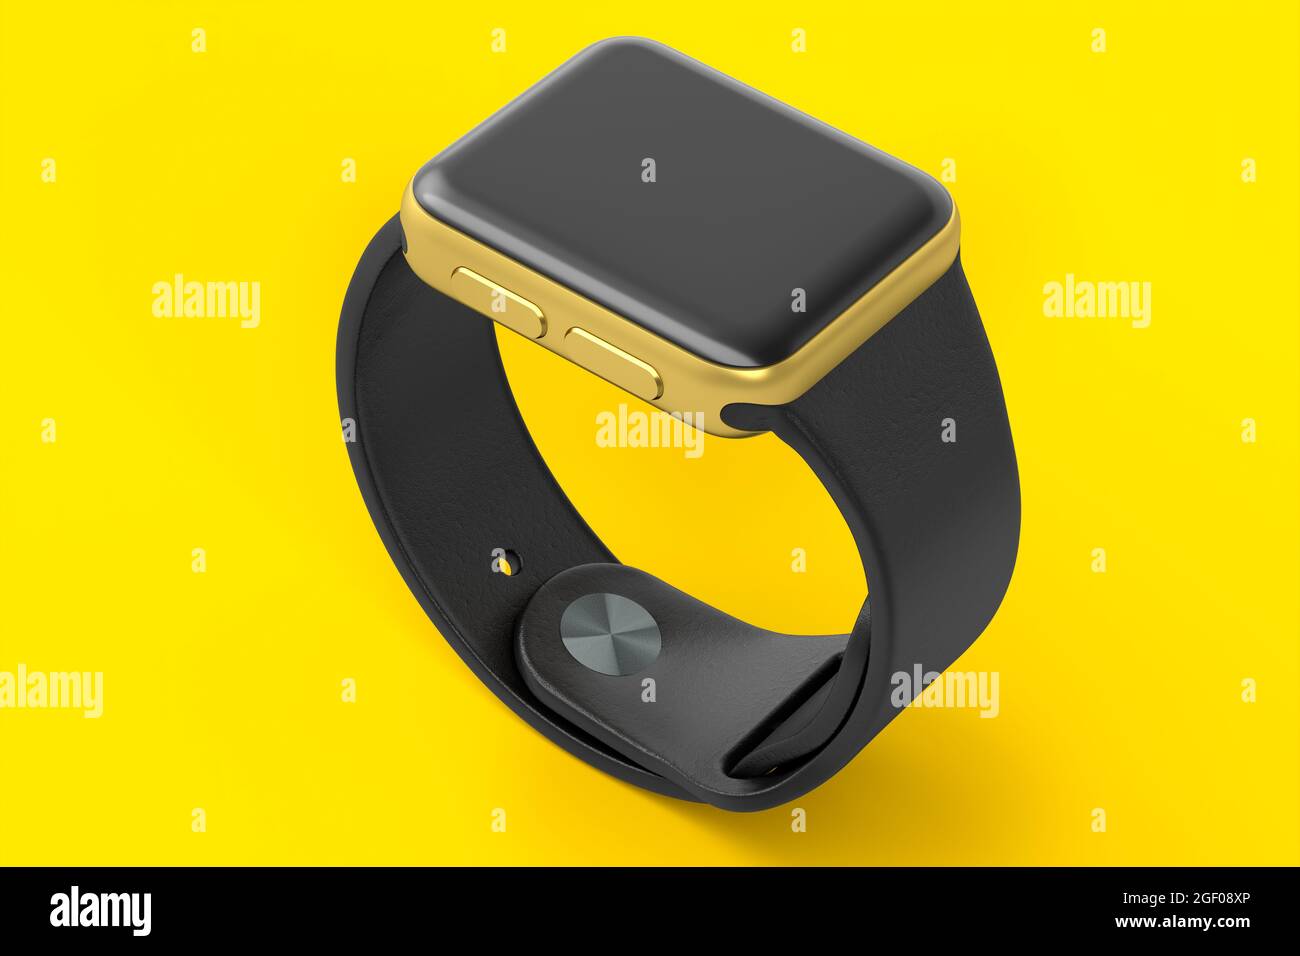 Reloj inteligente dorado inoxidable con correa negra aislada sobre fondo amarillo. 3D Concepto de renderizado de dispositivo portátil de salud y fitness tracker Foto de stock